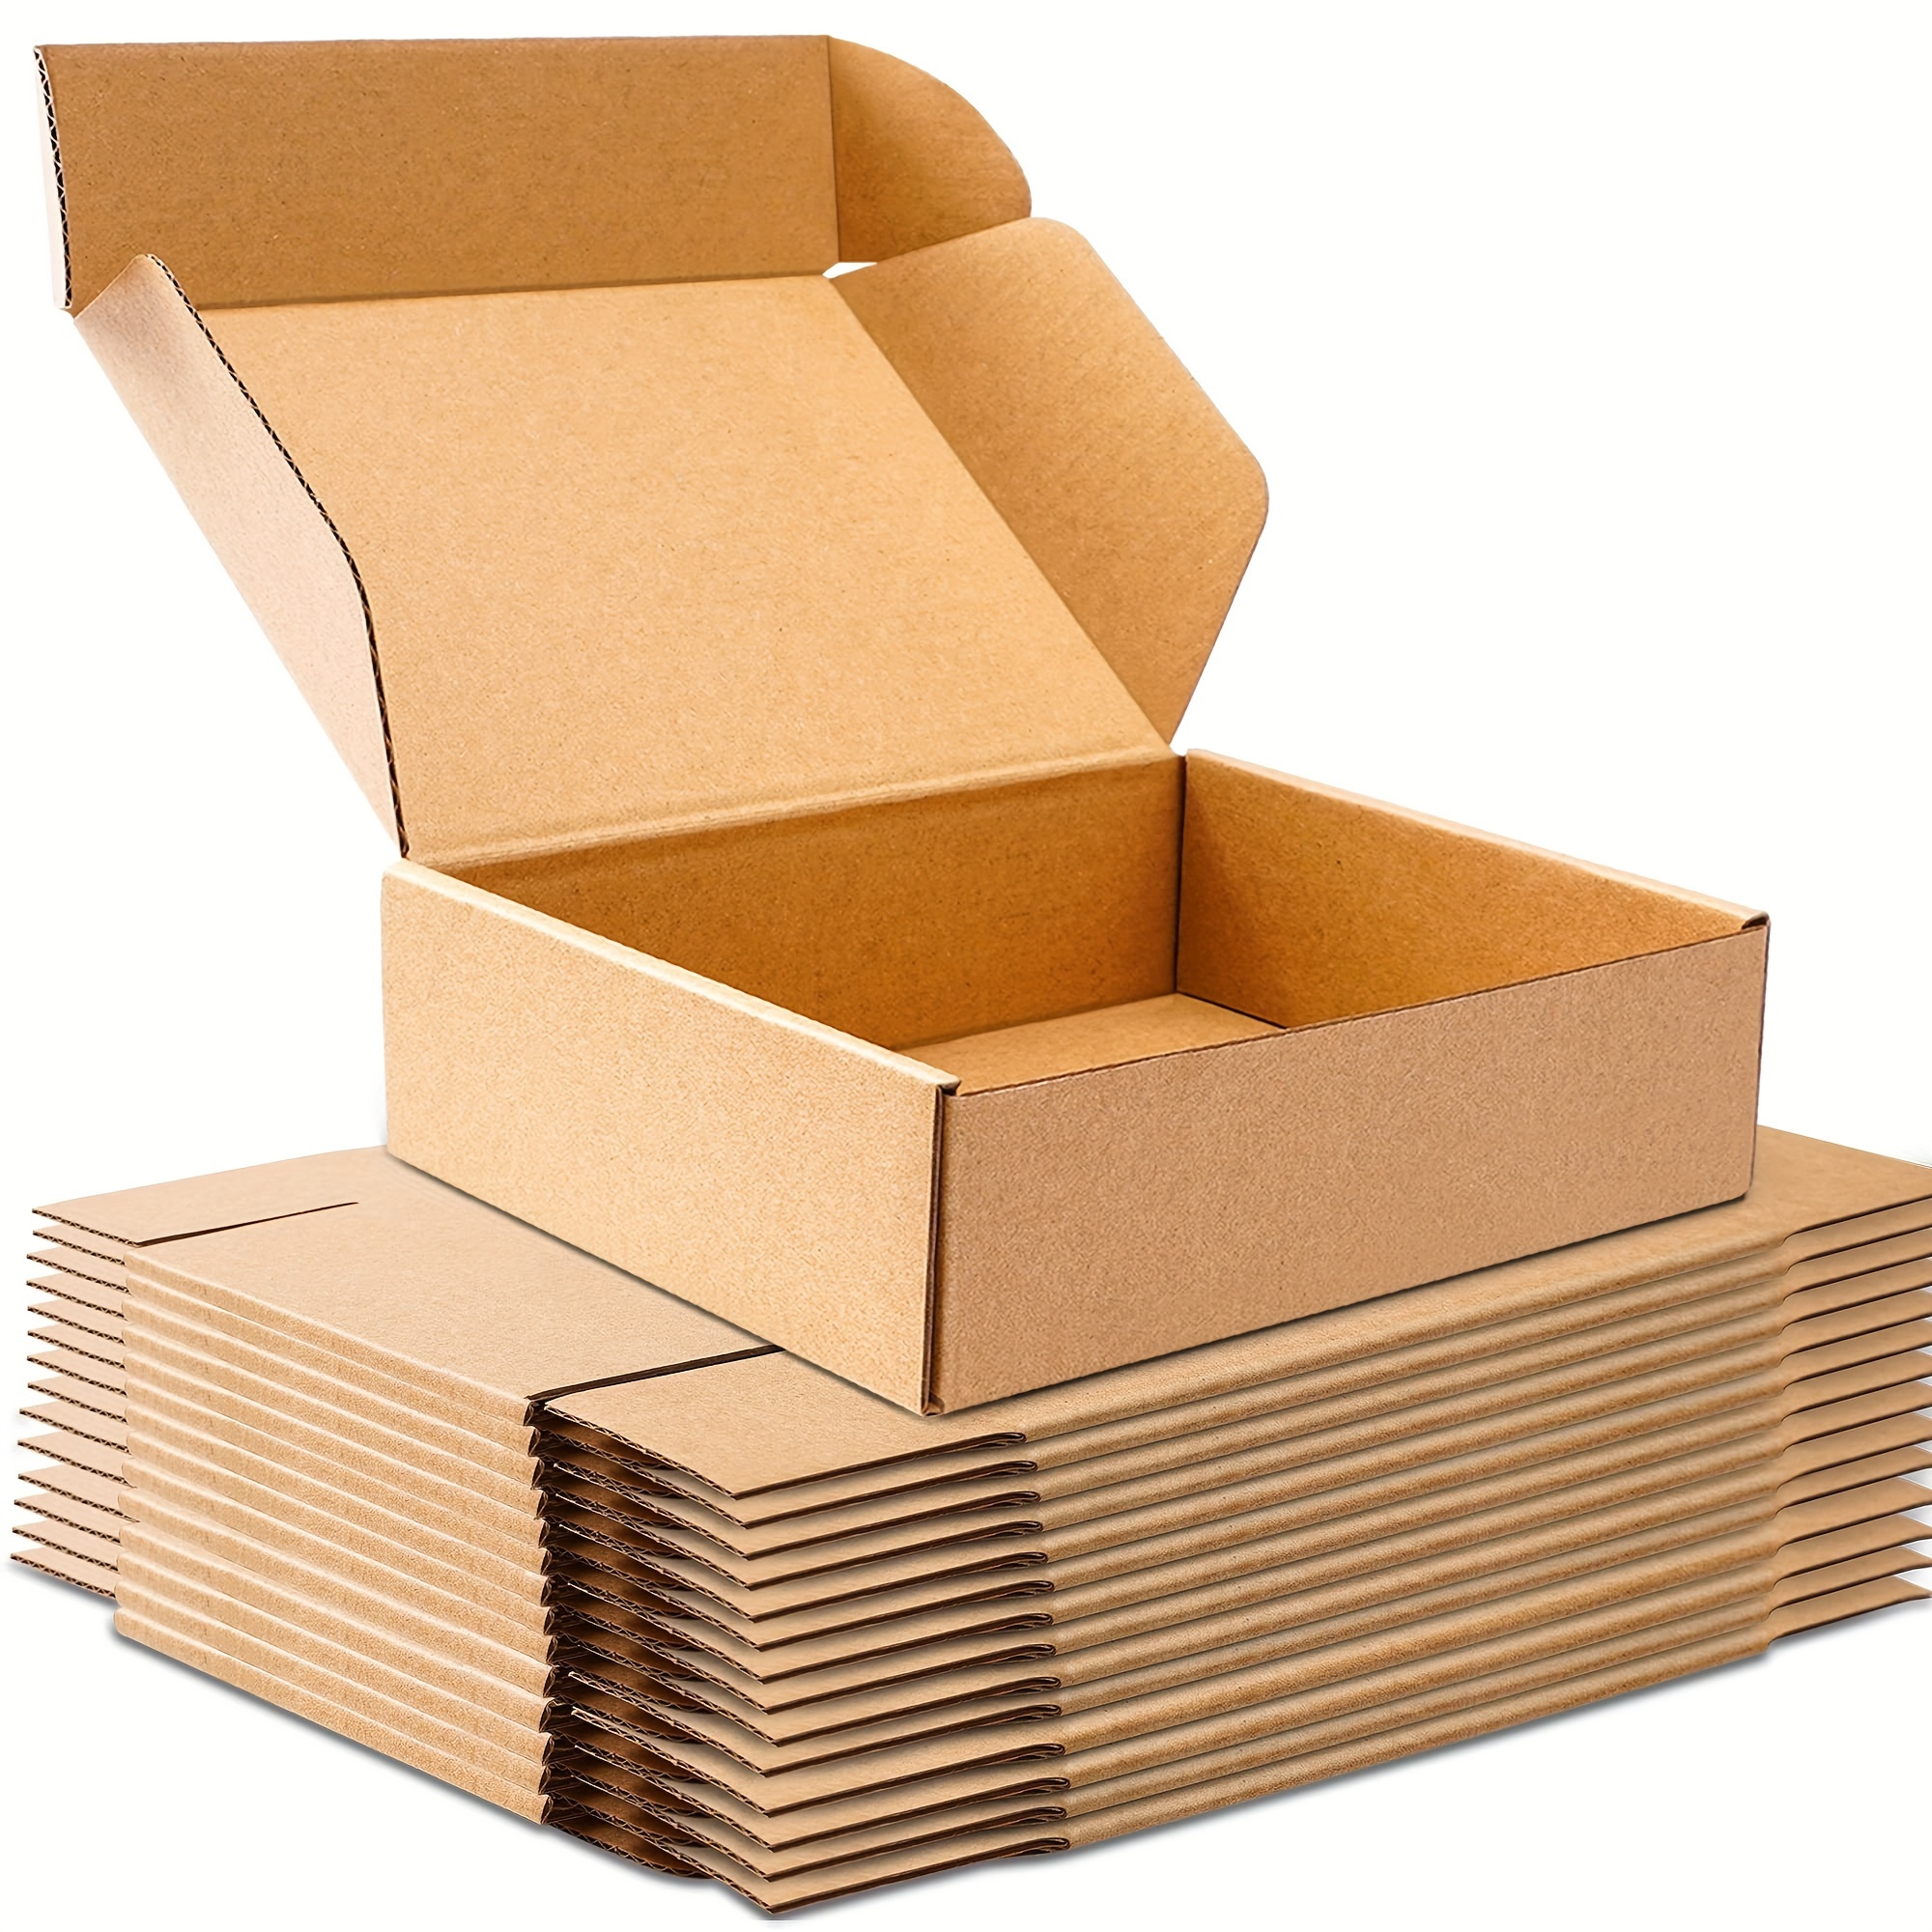  Cajas de cartón, cajas de envío, paquete de 15 cajas de cartón  corrugado reciclables, cajas de regalo pequeñas para envío, correo,  embalaje de regalos, 6 x 6 x 2 pulgadas (negro) 